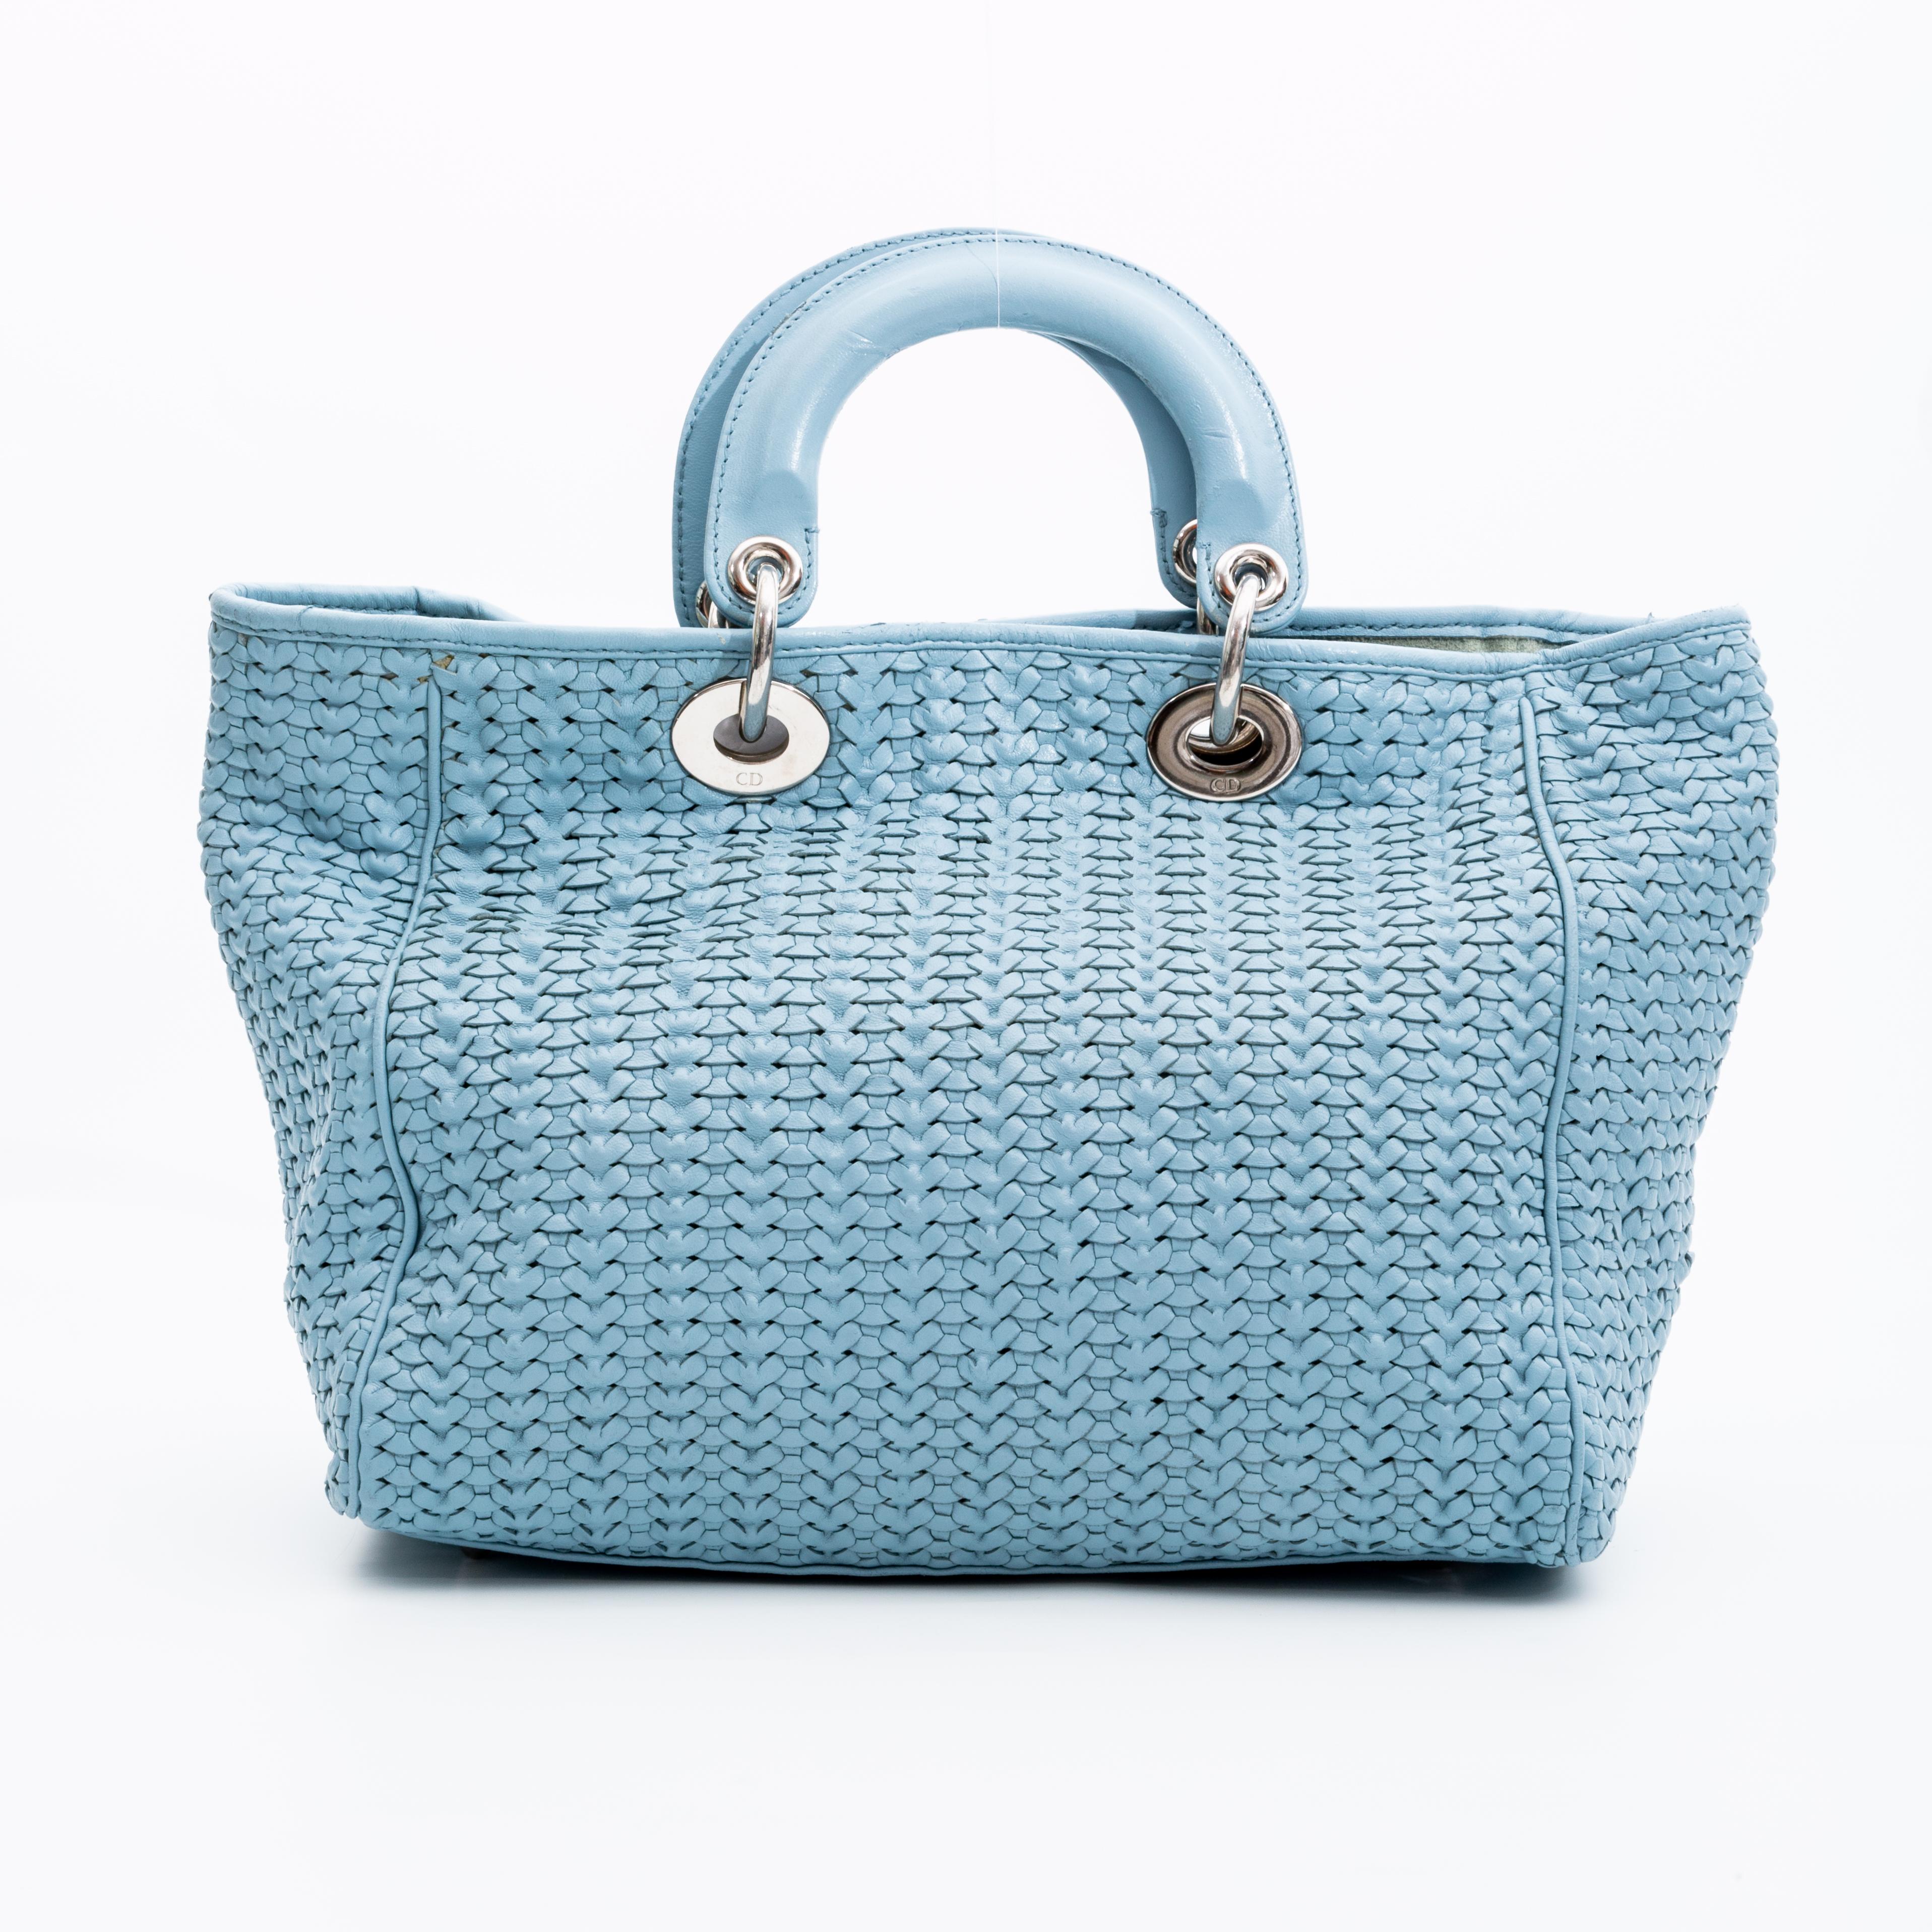 Ce sac iconique Lady Dior est le modèle de petite taille et présente du cuir tressé bleu pastel, des ferrures de couleur Icone, des charmes Dior, deux anses attachées par des liens ronds, un dessus ouvert avec fermeture à bouton-pression et une